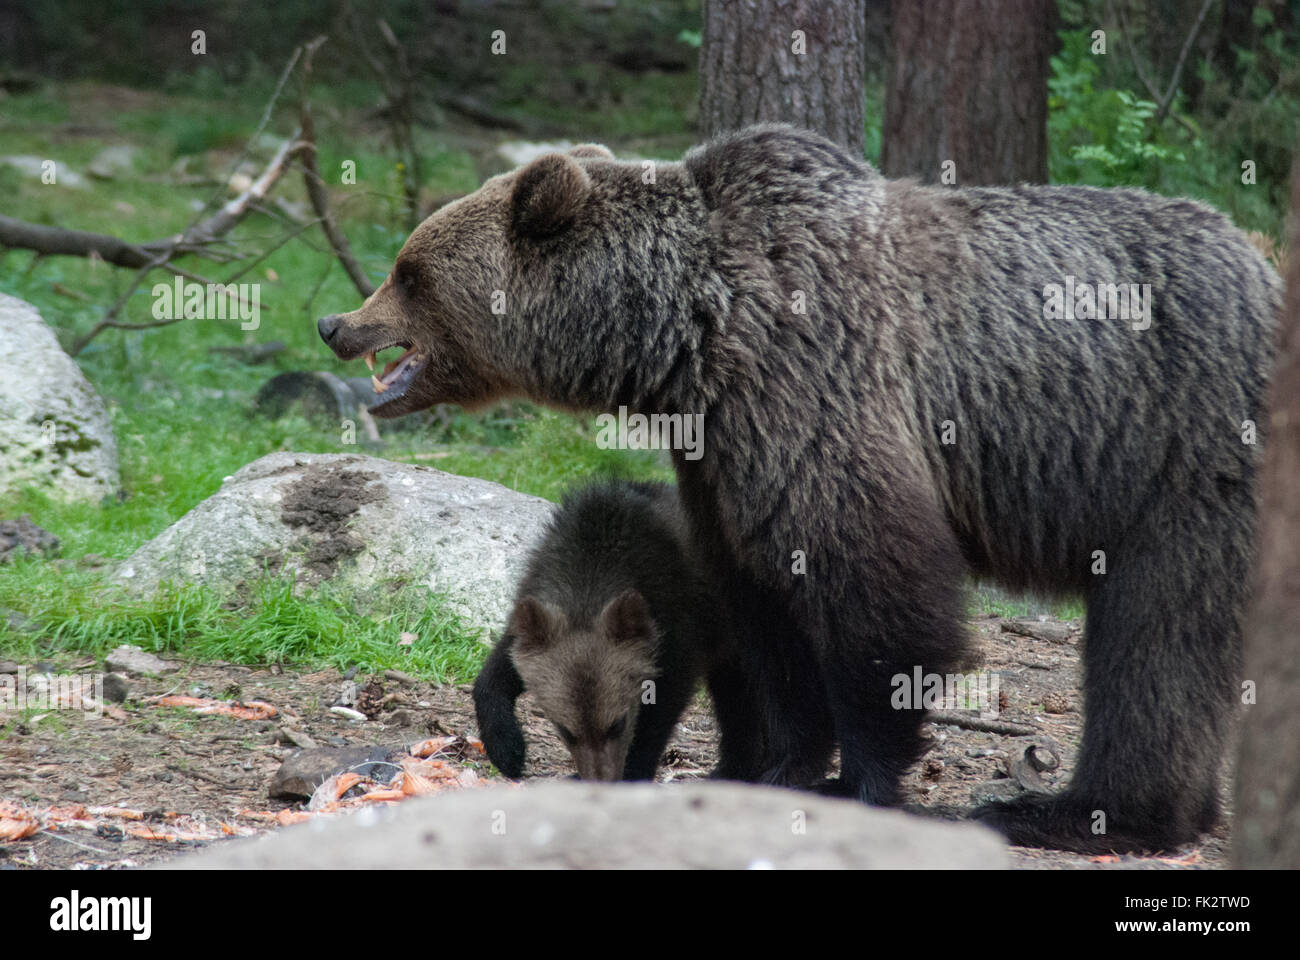 Unione di orso bruno eurasiatico o orso bruno ( Ursus arctos arctos) e giovani cub nella Taiga foresta in Finlandia orientale Foto Stock